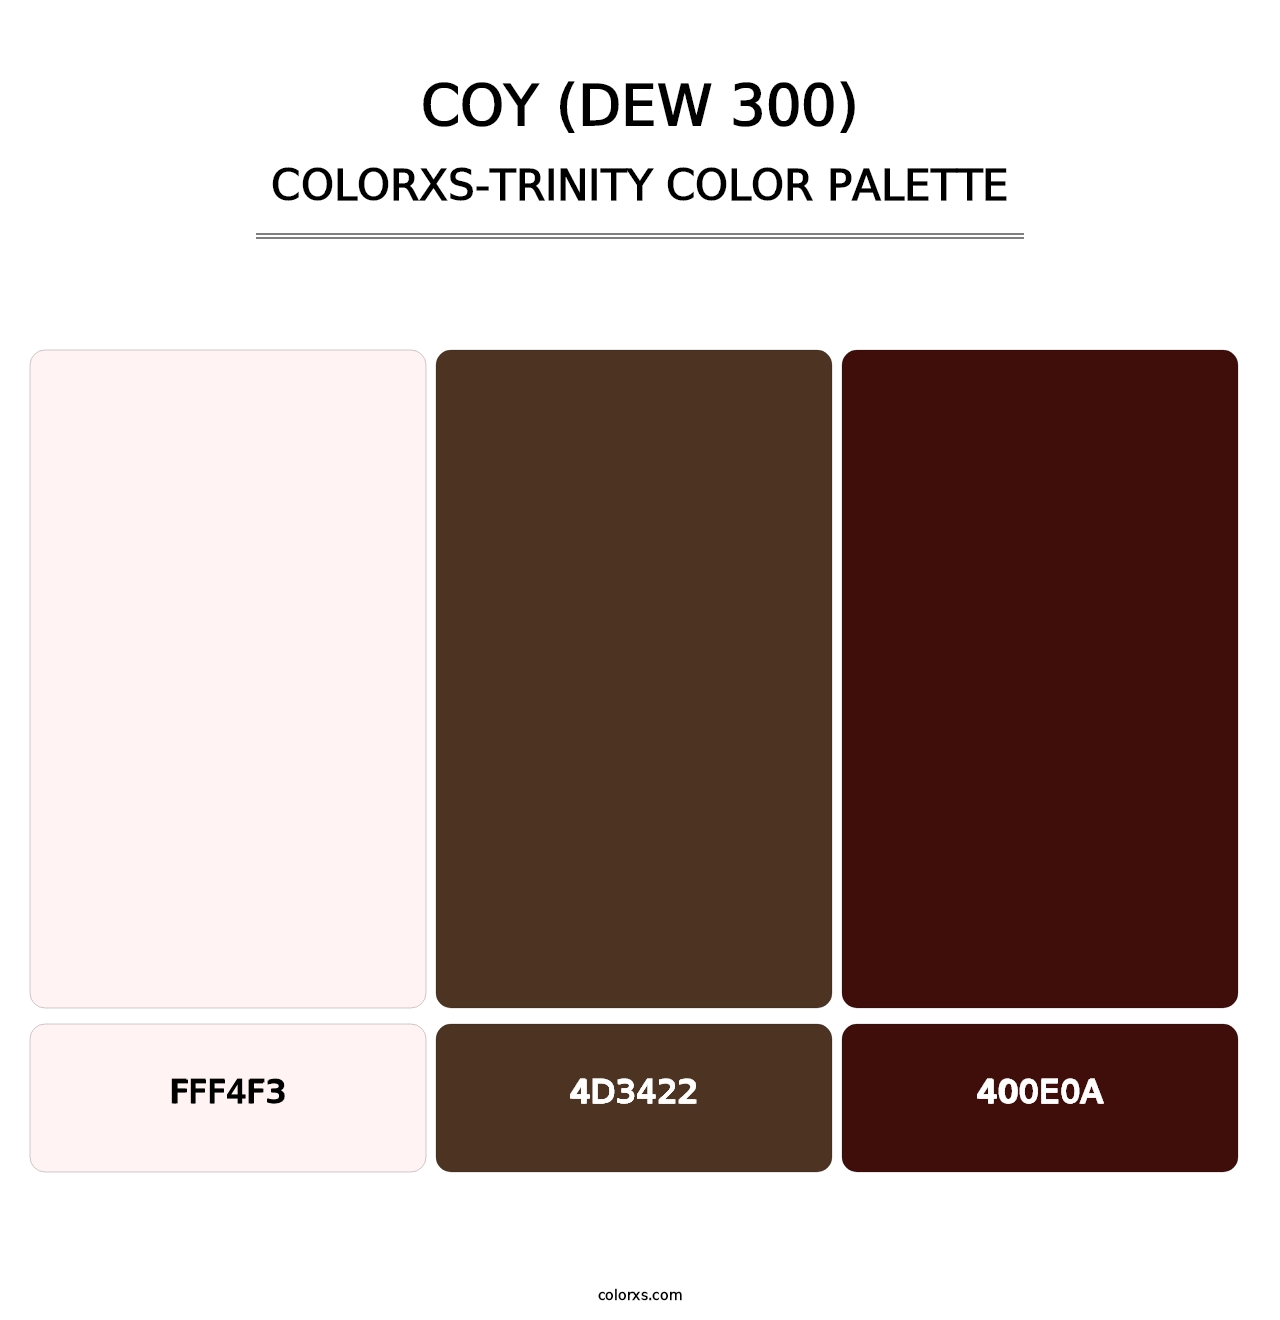 Coy (DEW 300) - Colorxs Trinity Palette